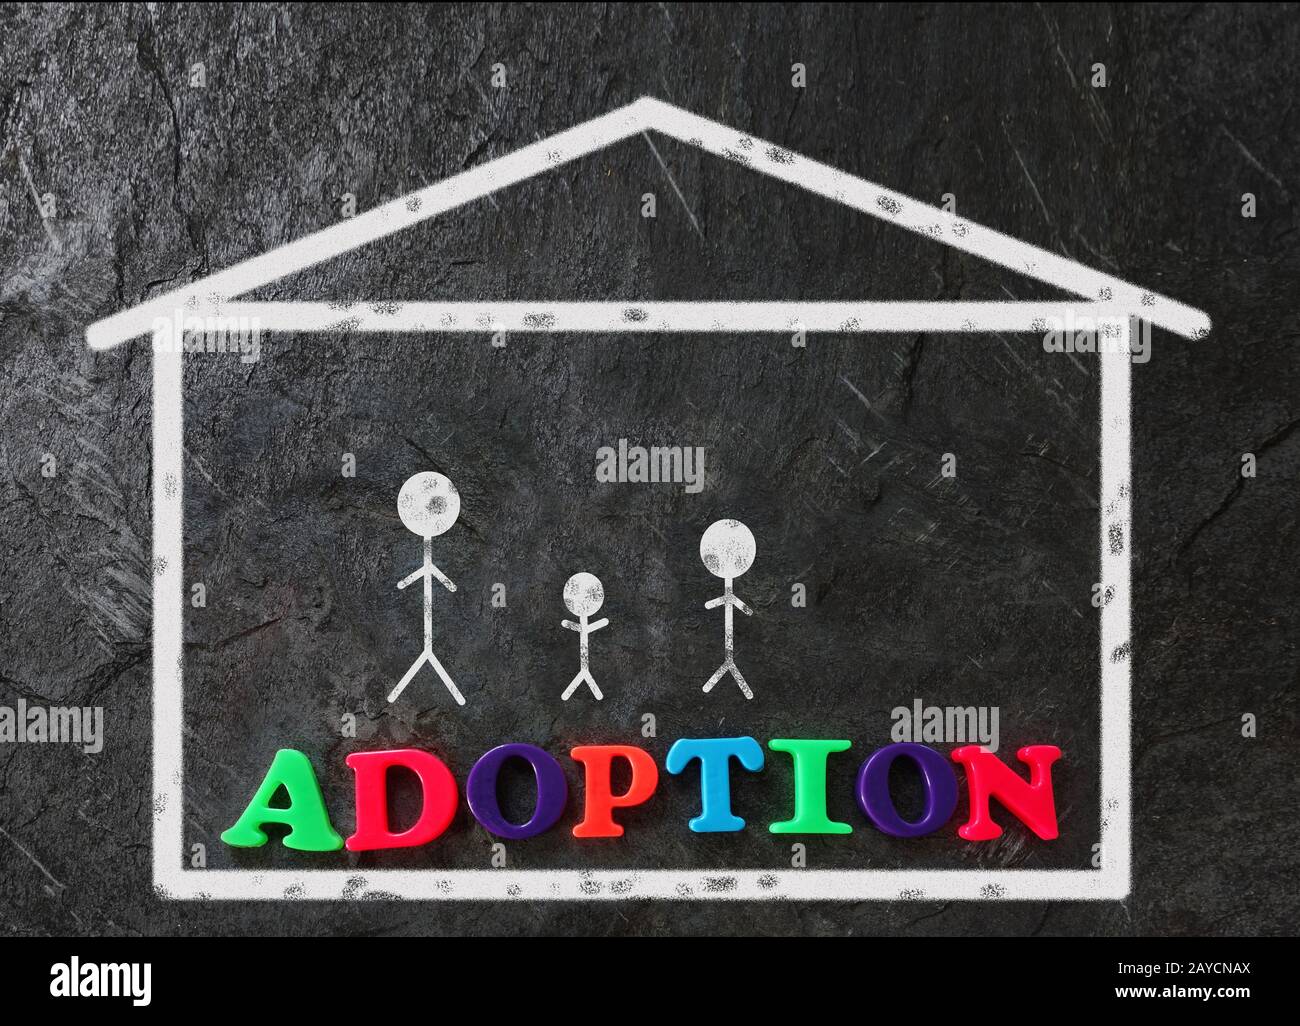 Adoption family concept Stock Photo